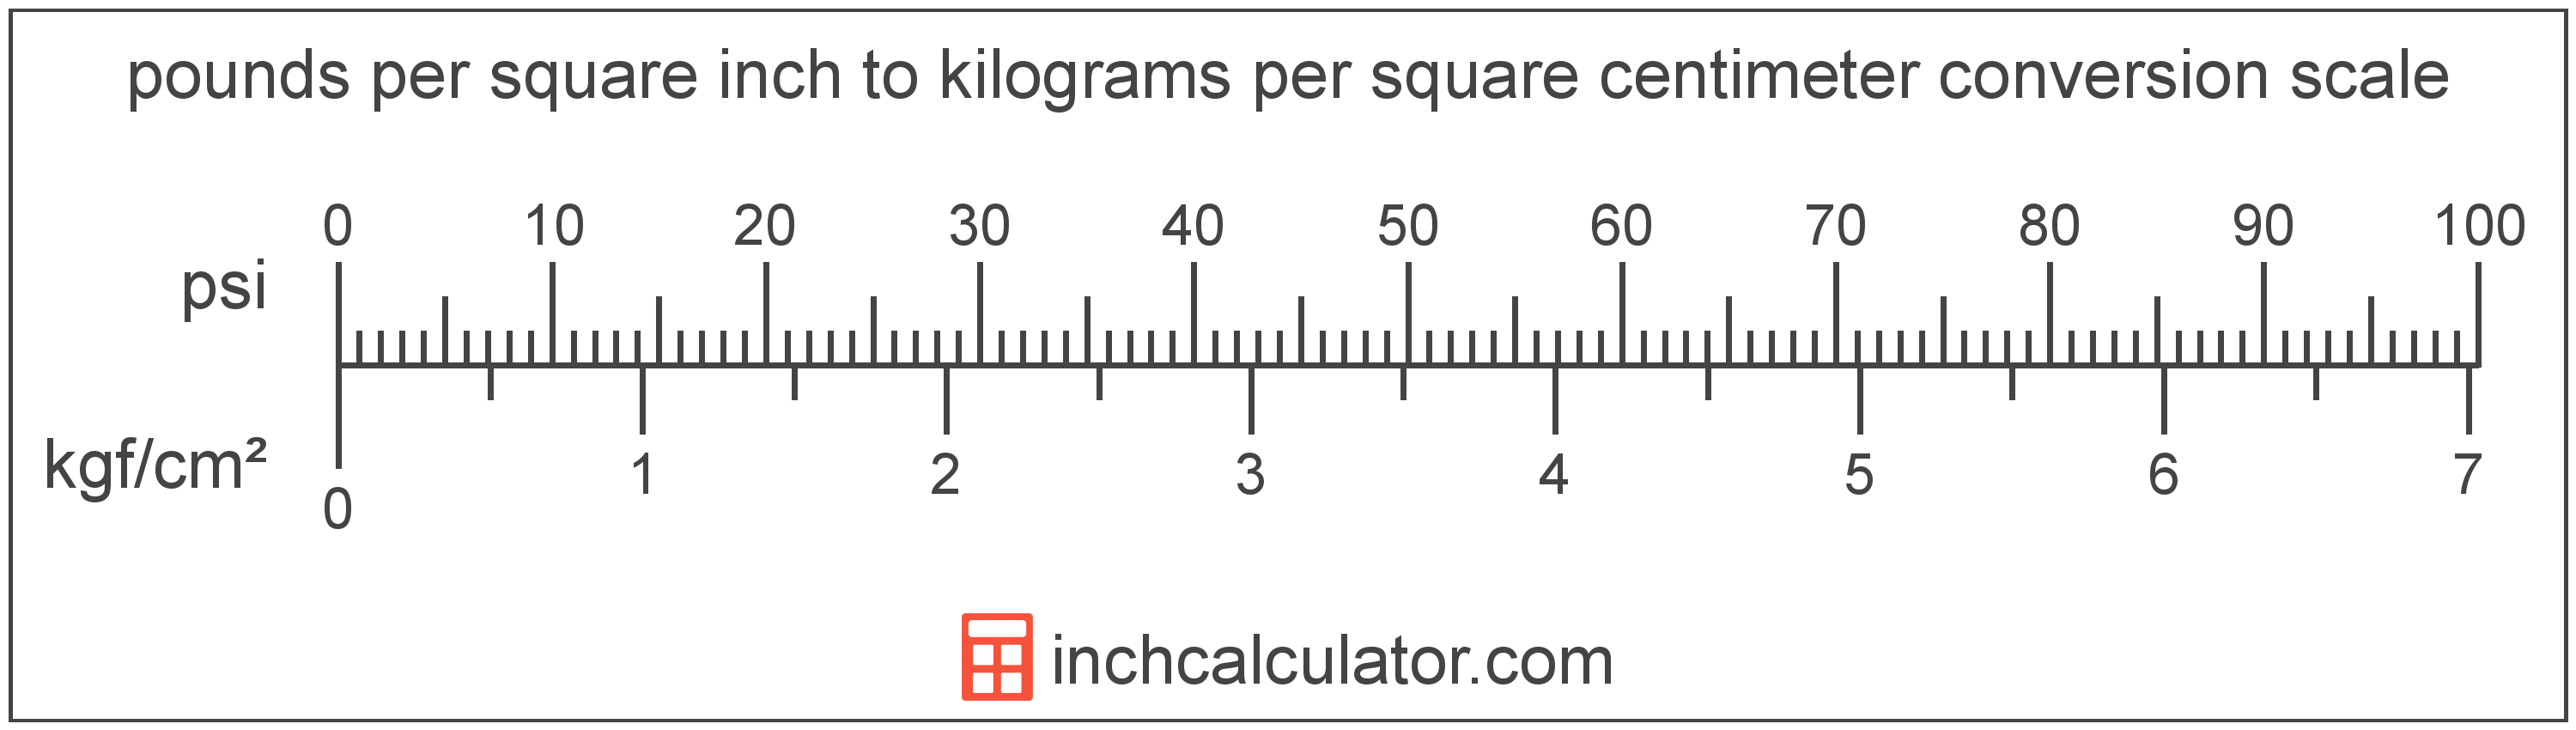 Pounds per Square Inch to Kilograms per Square Centimeter Conversion